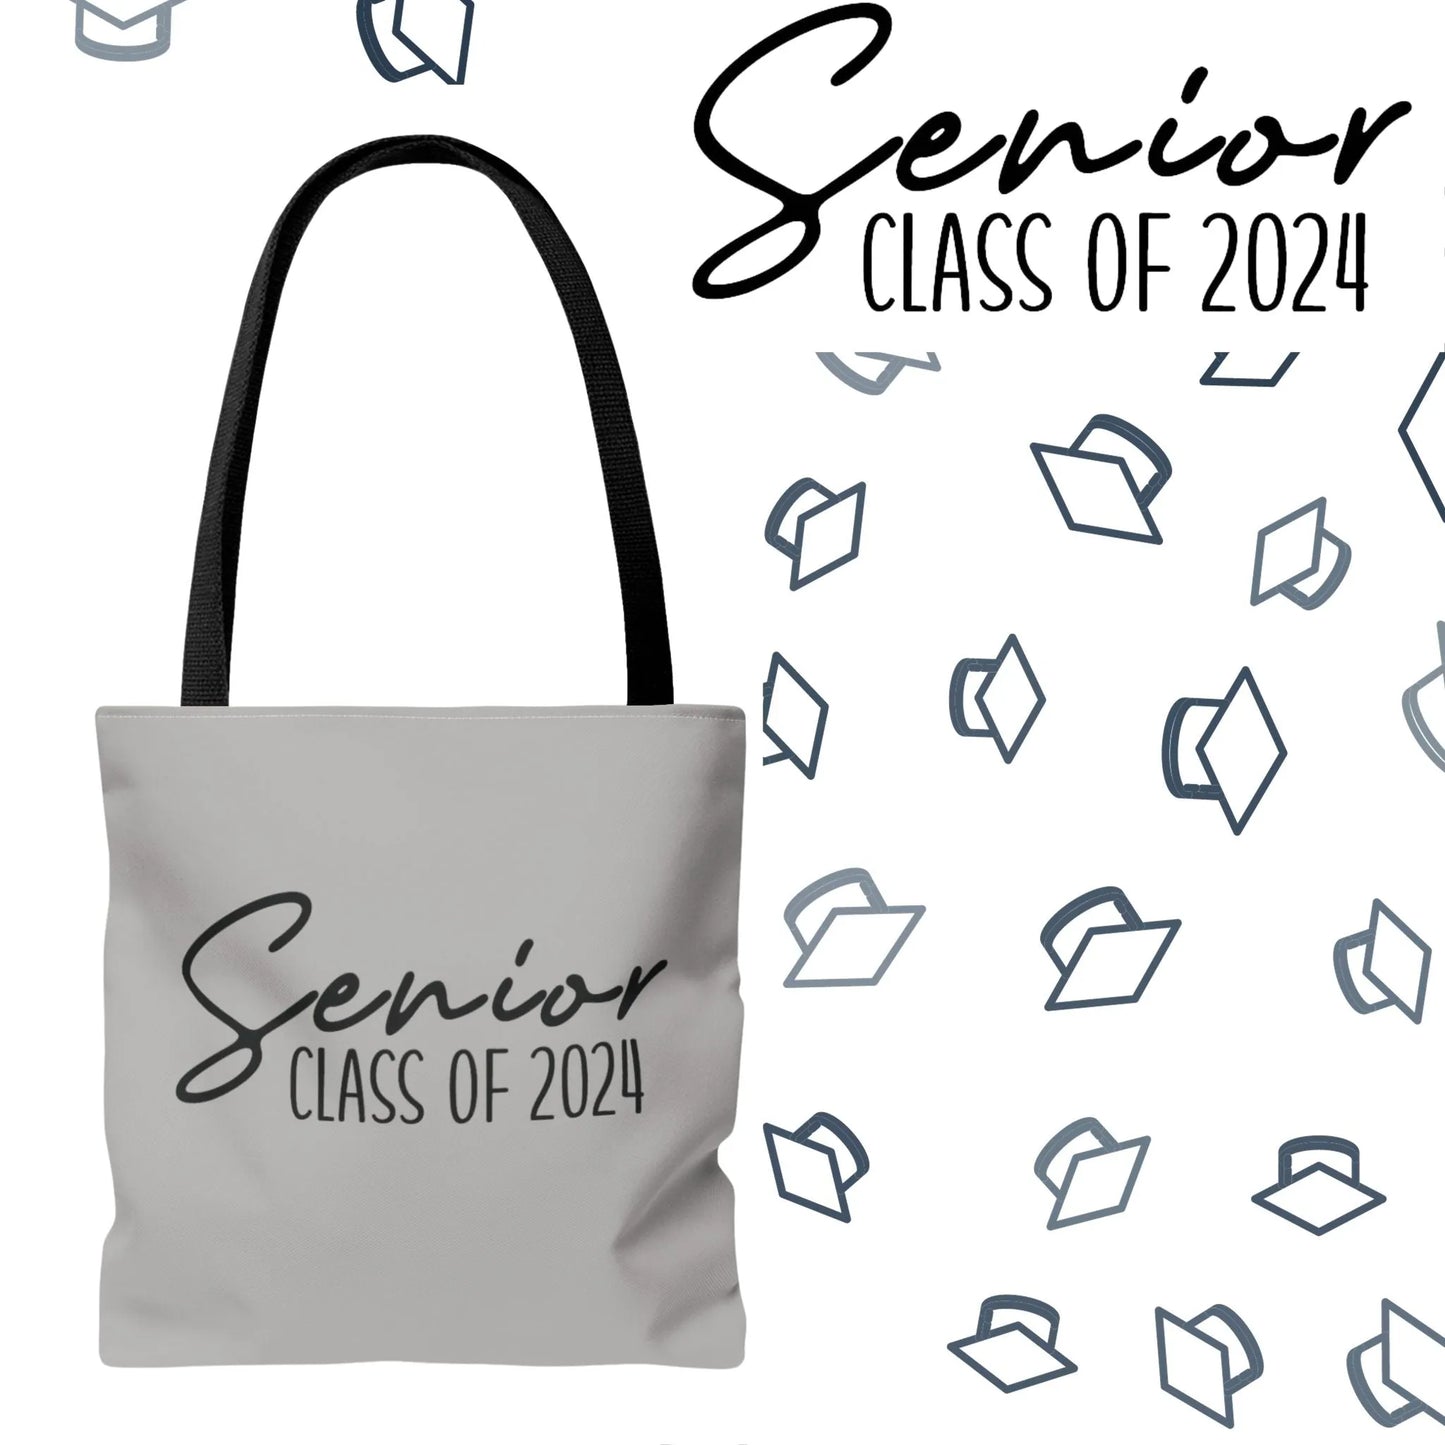 Senior Class of 2024 Tote Bag - Class of 2024 Tote Bag - Senior 2024 Tote Bag grey